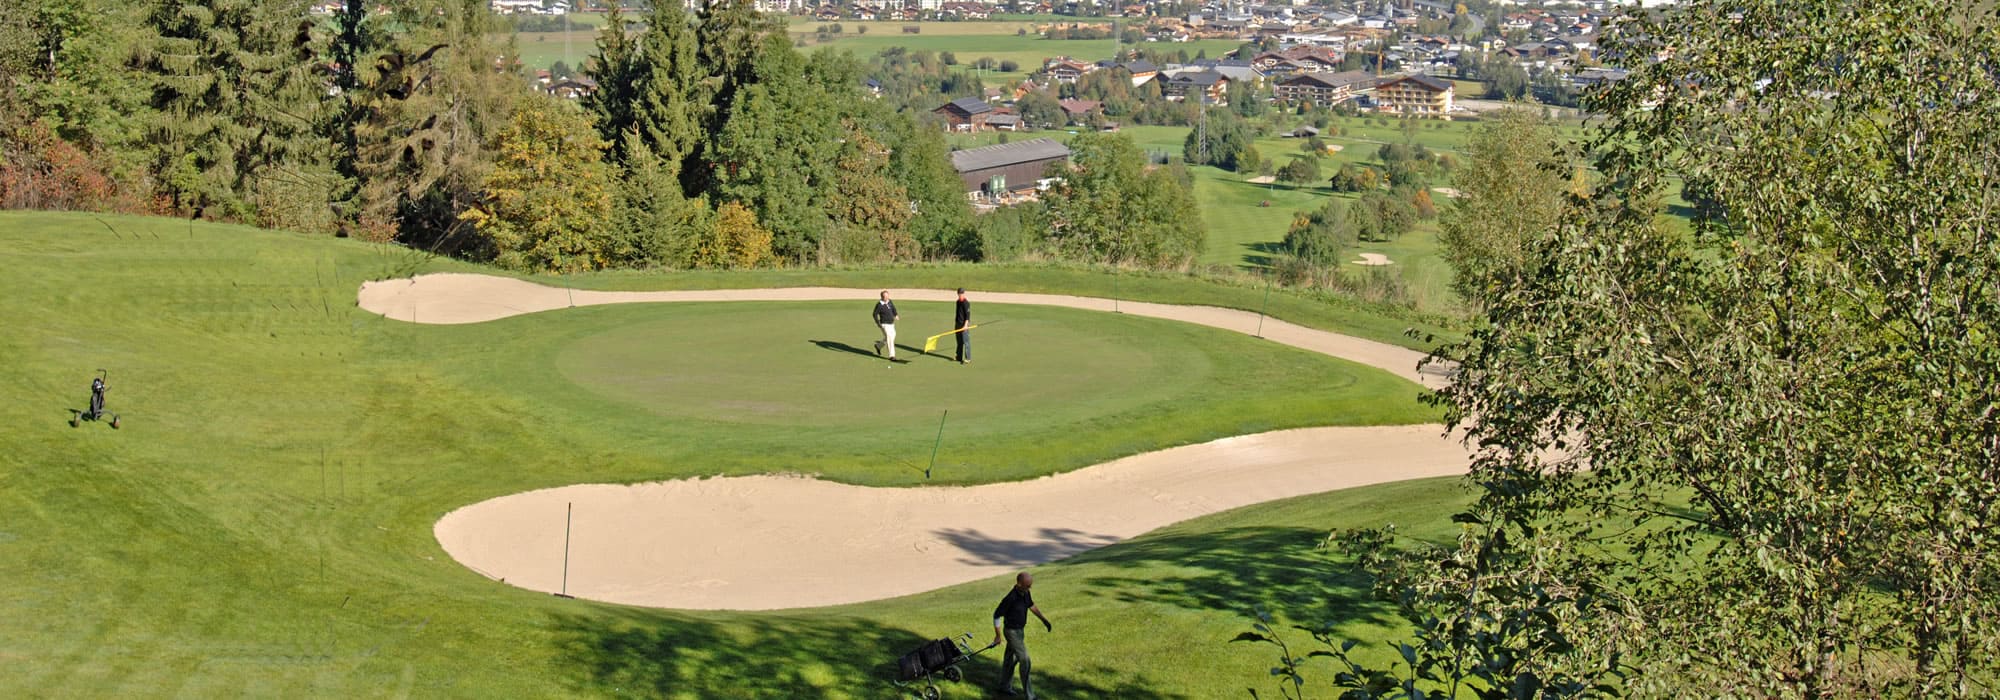 Radstadt golf course